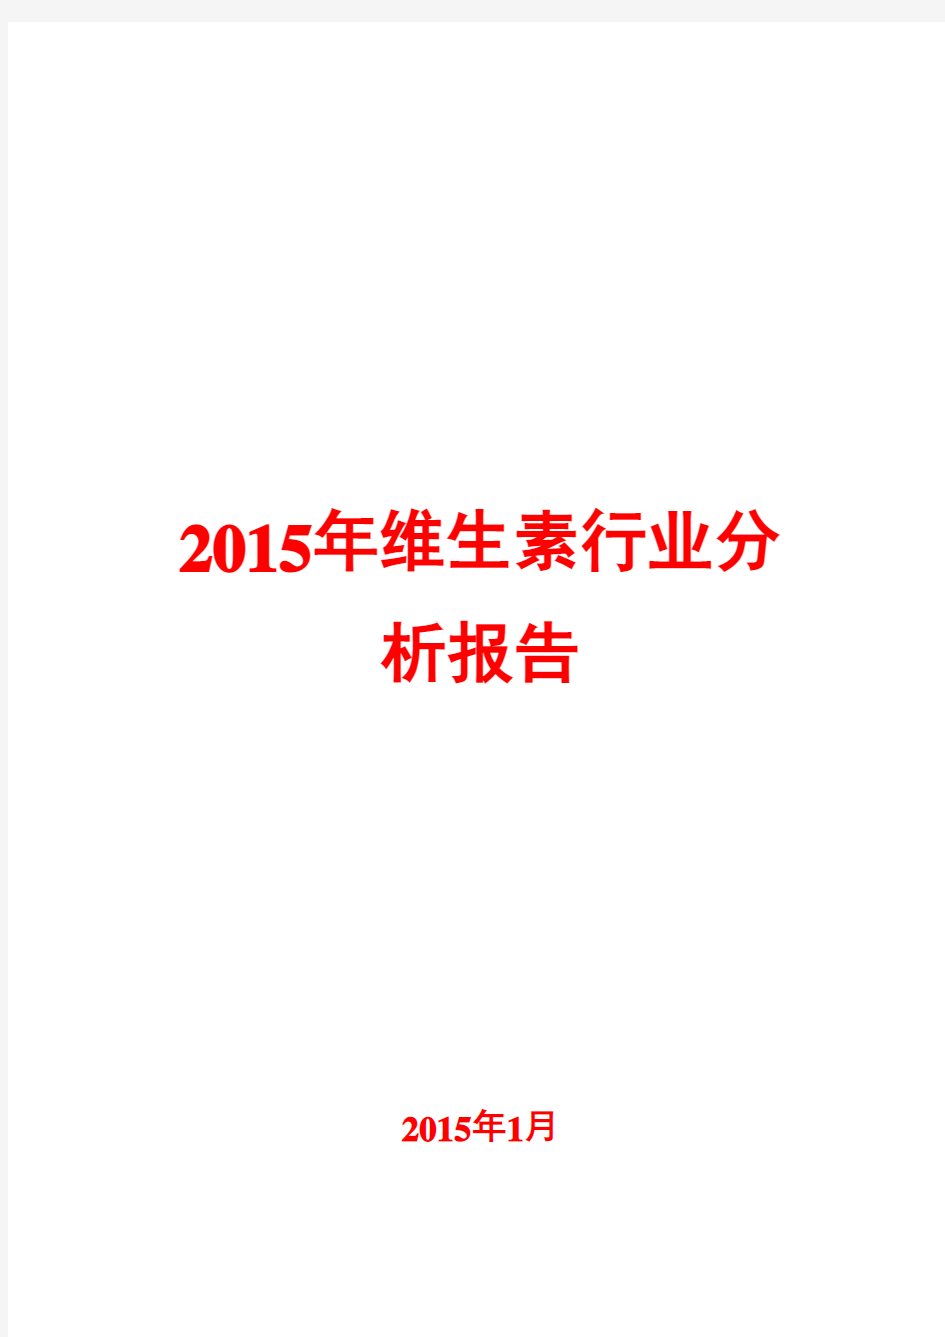 2015年维生素行业分析报告